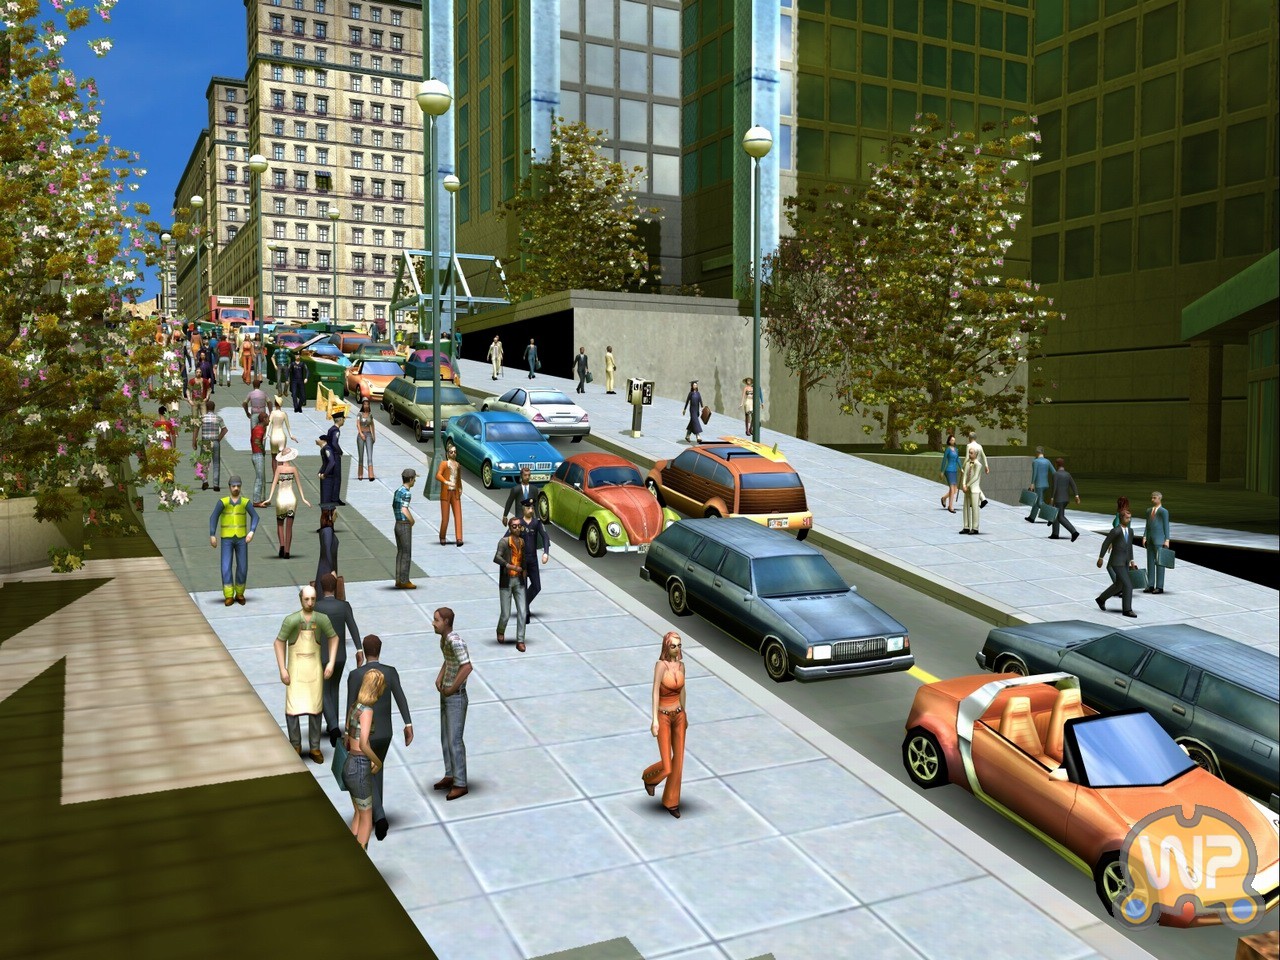 8 city life. City Life 2008. City Life: город твоей мечты градостроительные симуляторы. Сити лайф игра 2016. City Life 2008: город, созданный тобой.